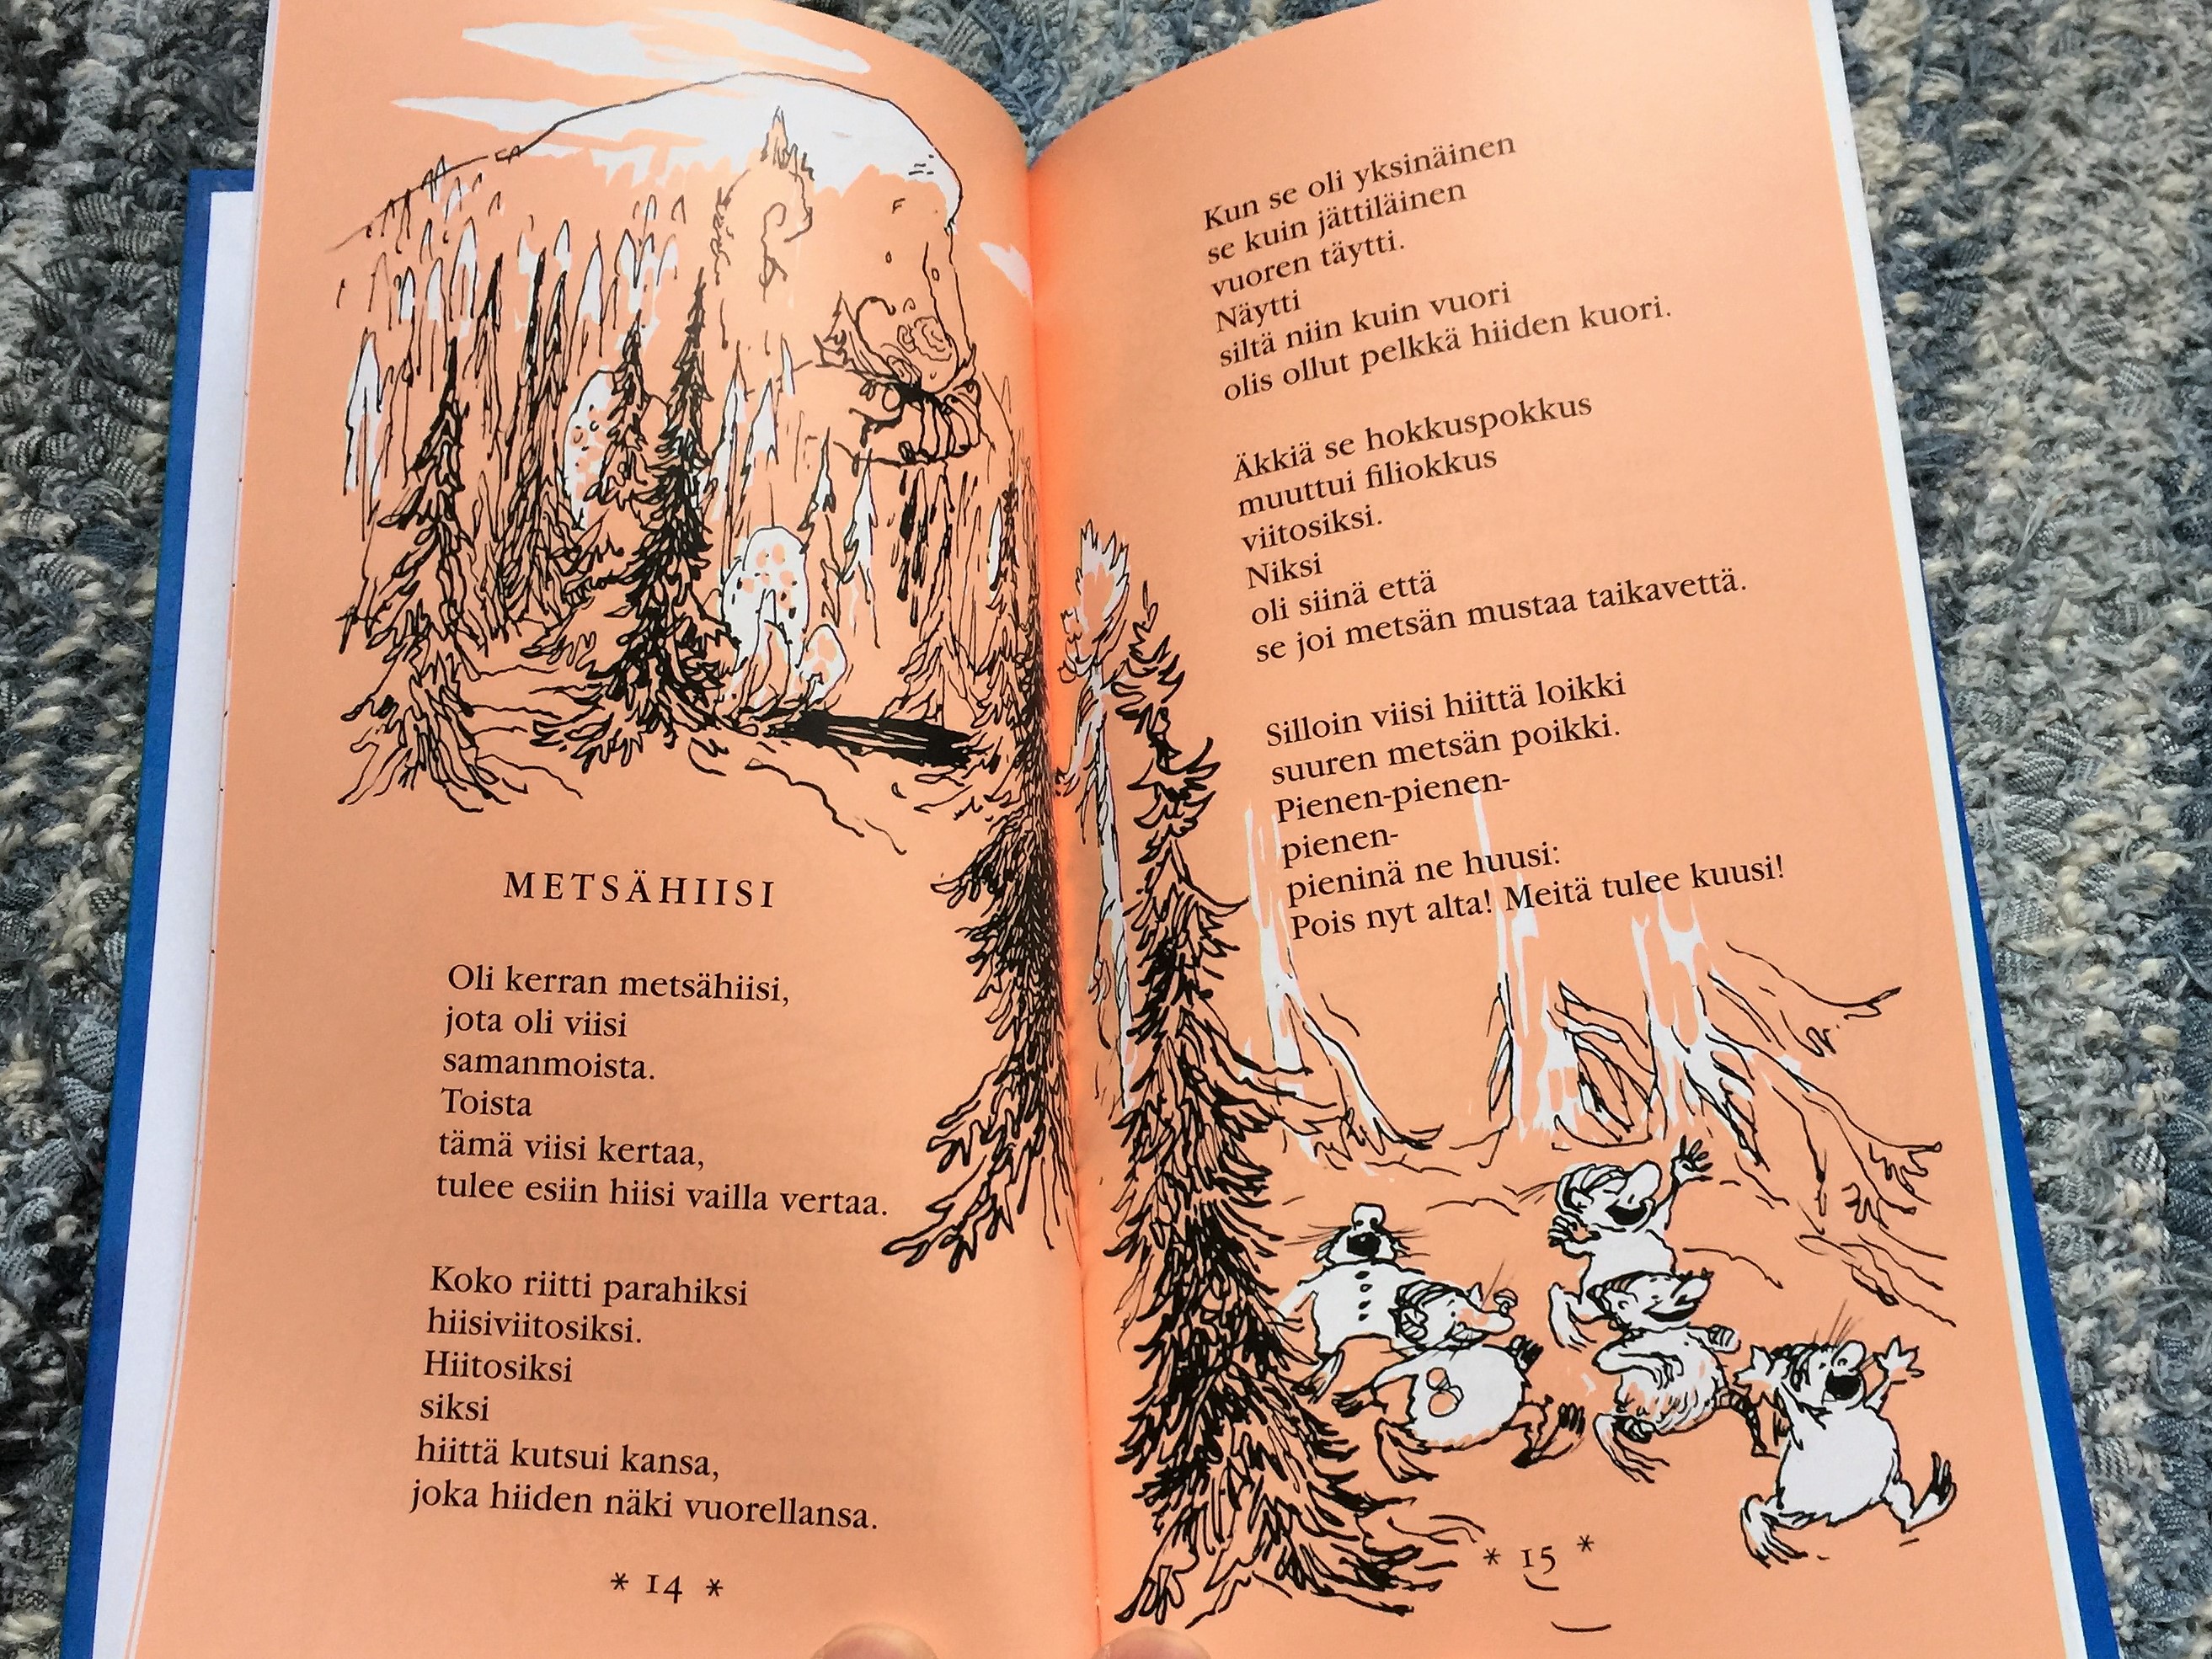 Tiitiäisen Satupuu by Kirsi Kunnas 1